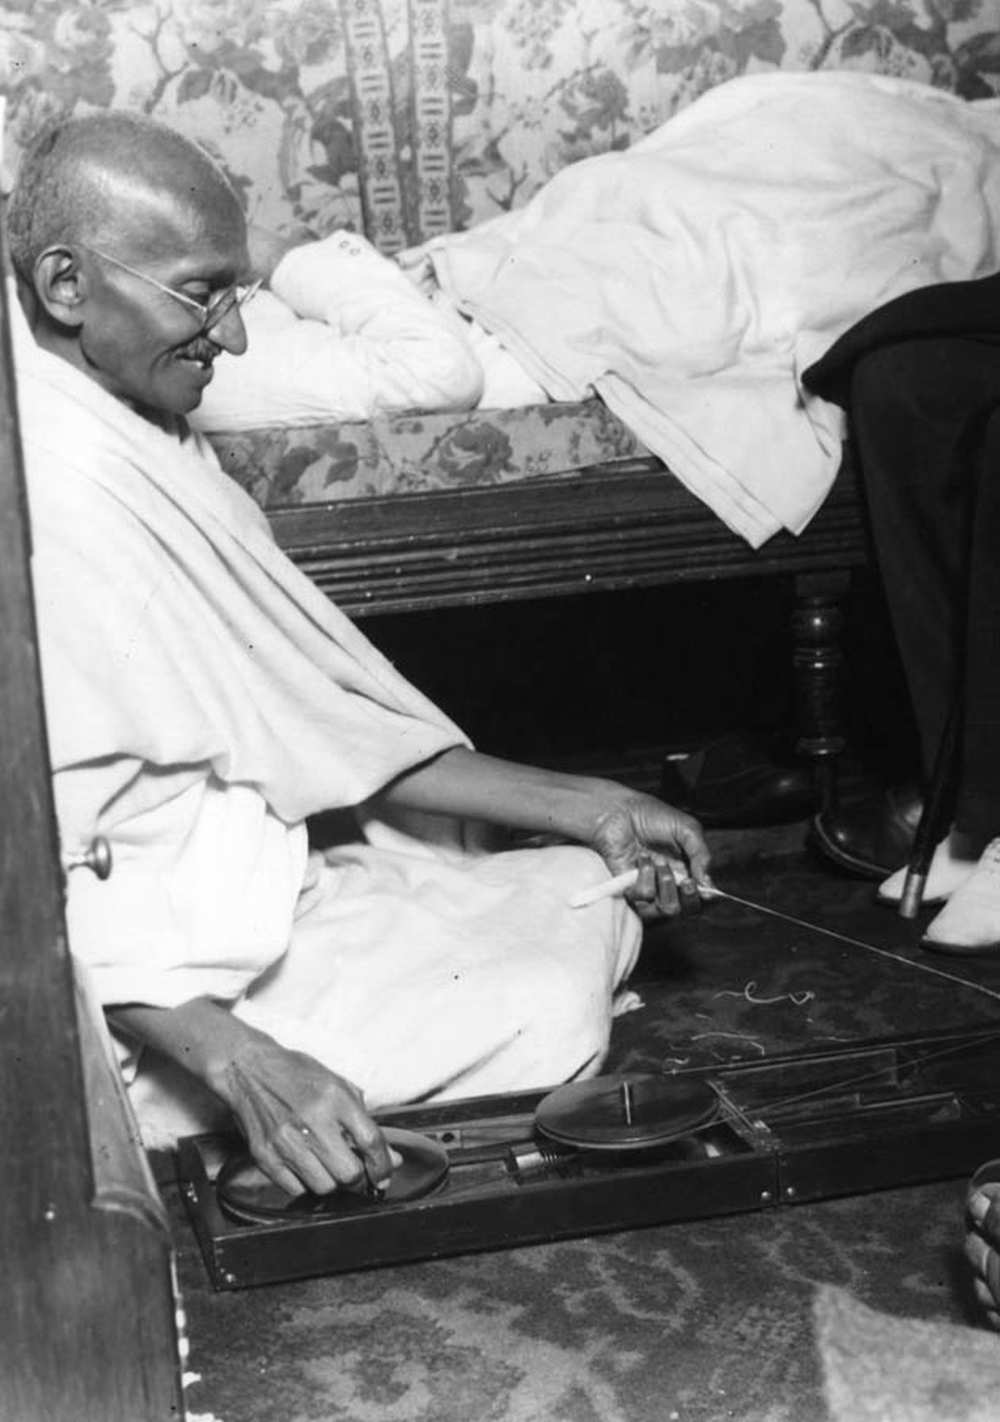 Gándhi egy gőzhajó fedélzetén sző 1931. szeptember 11/12-én londoni látogatása idején. A kép forrása: Mohandas K. Gandhi. In: Wikipédia (angol nyelvű kiadás) https://commons.wikimedia.org/wiki/Mohandas_K._Gandhi#/media/File:Gandhi_on_board_a_cross_channel_steamer_for_a_visit_to_London.jpg